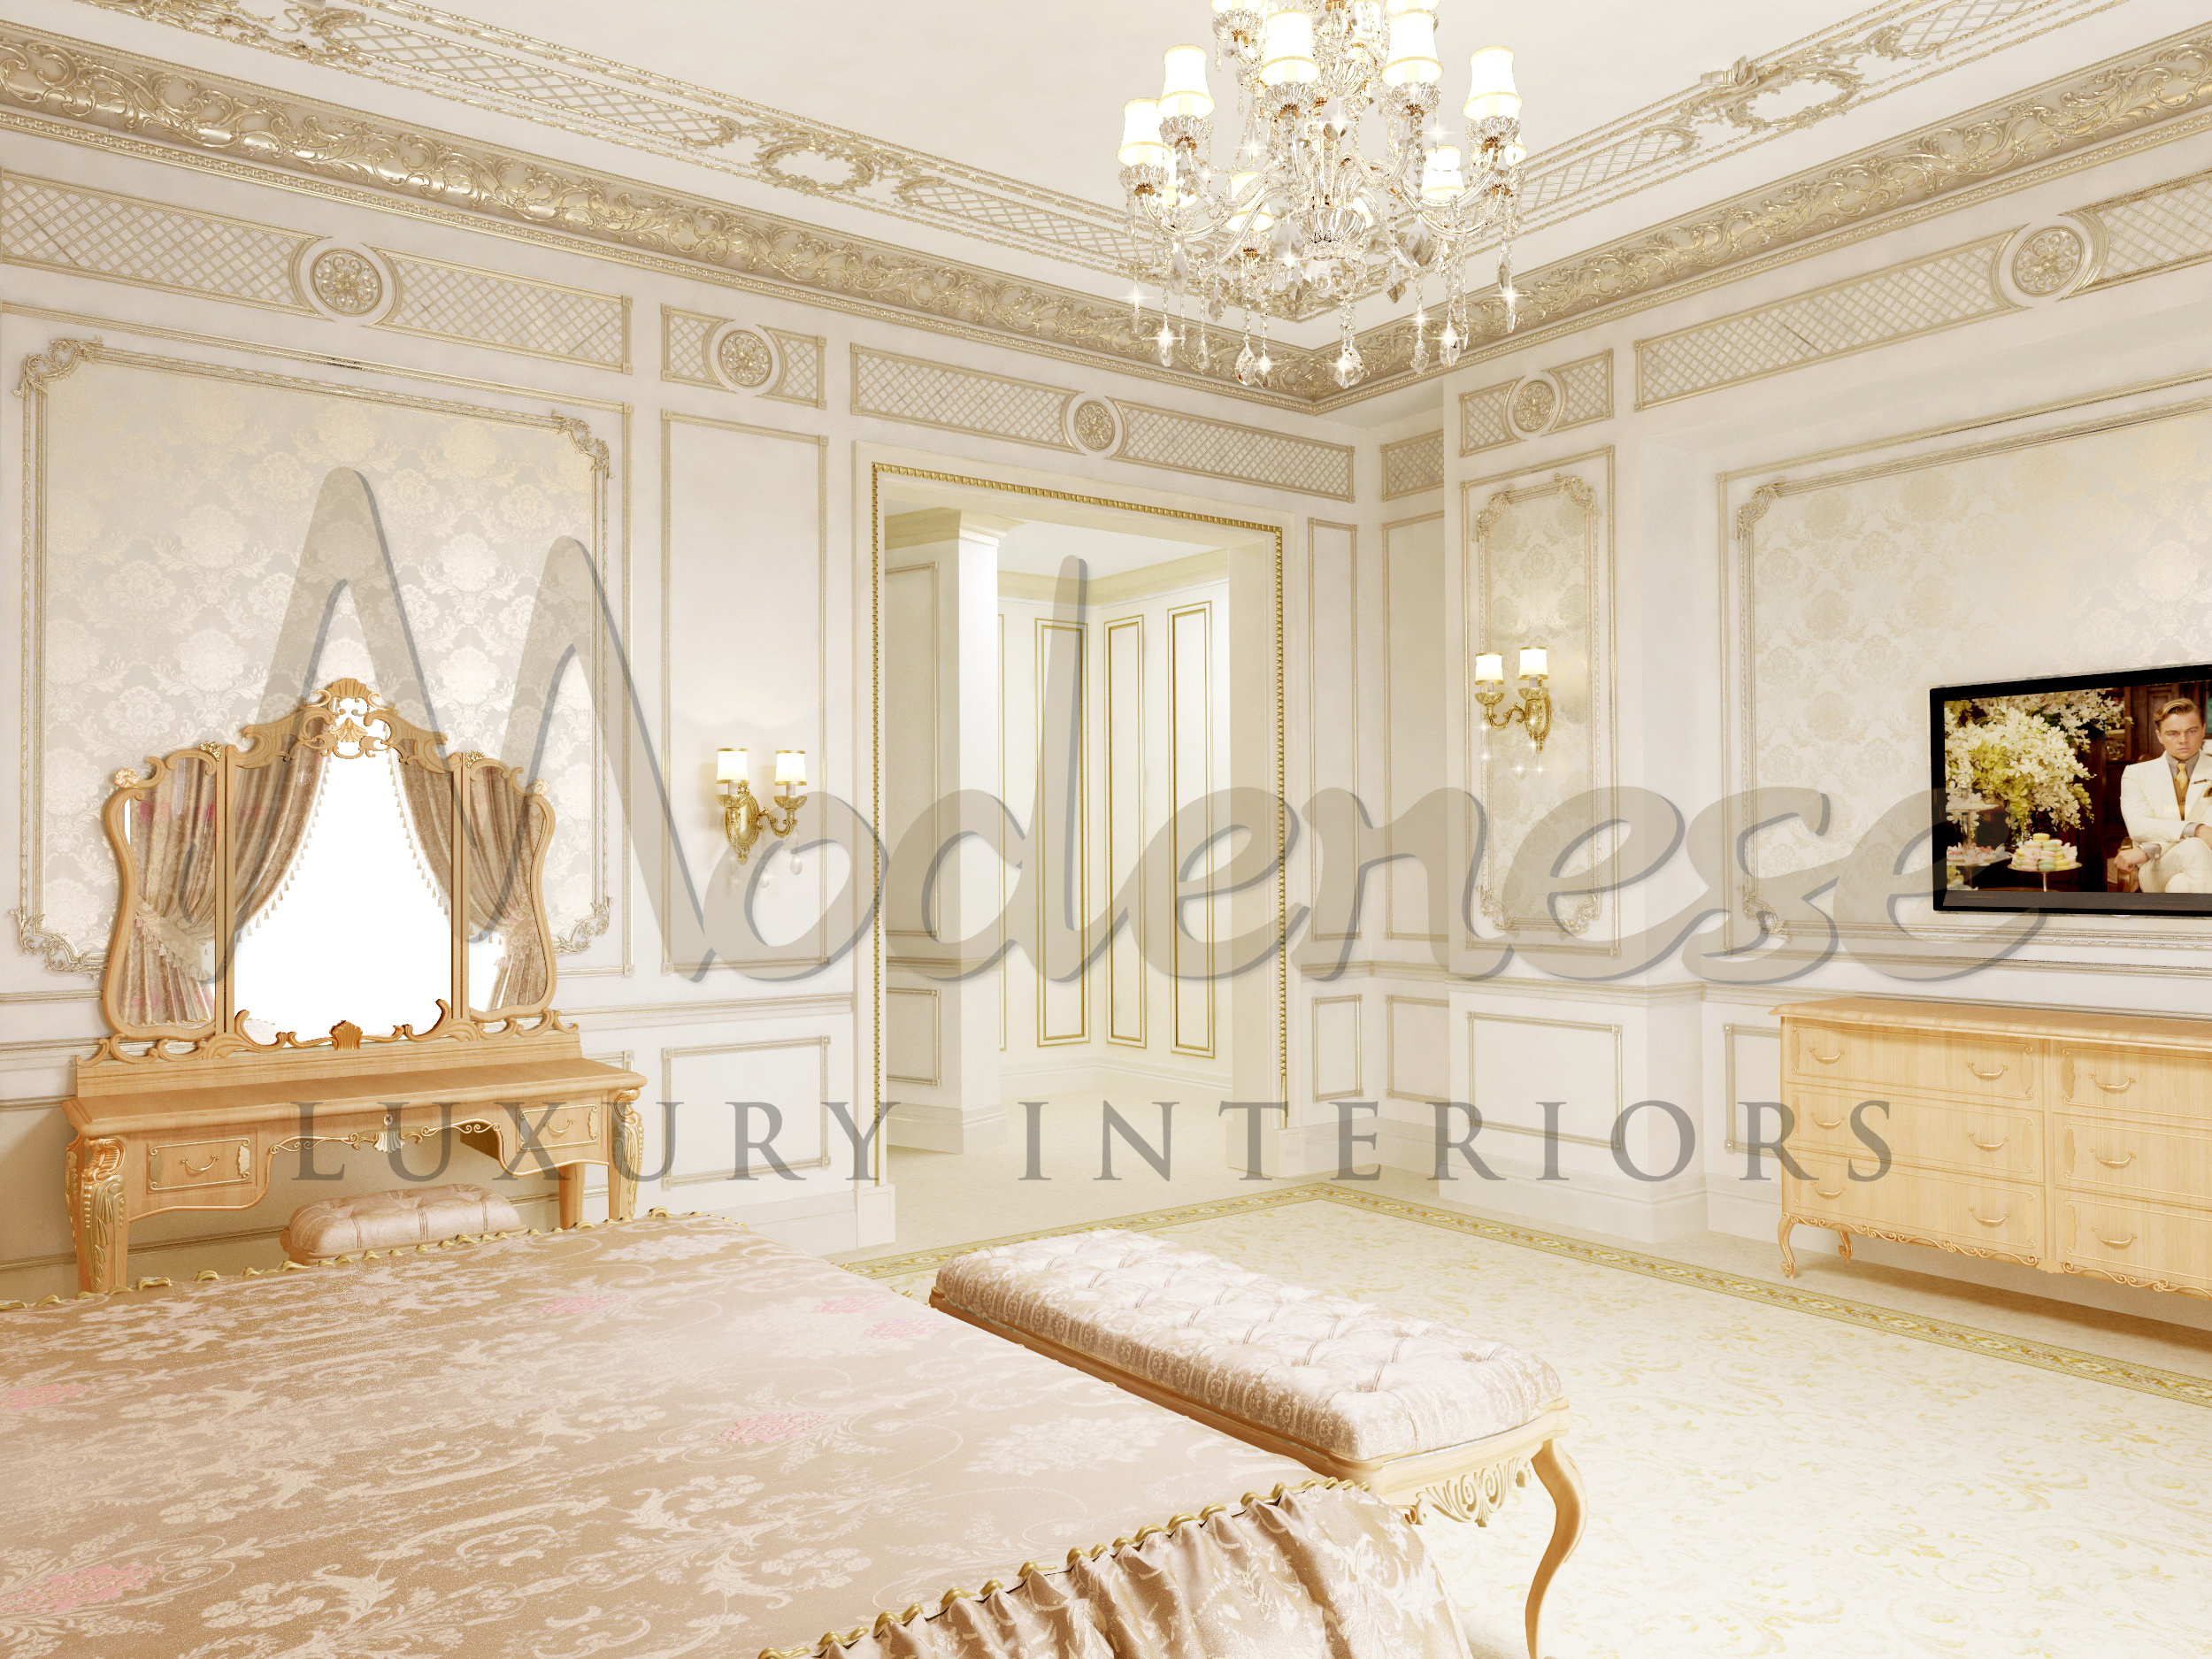 卡塔尔多哈巴洛克风格的皇家卧室设计